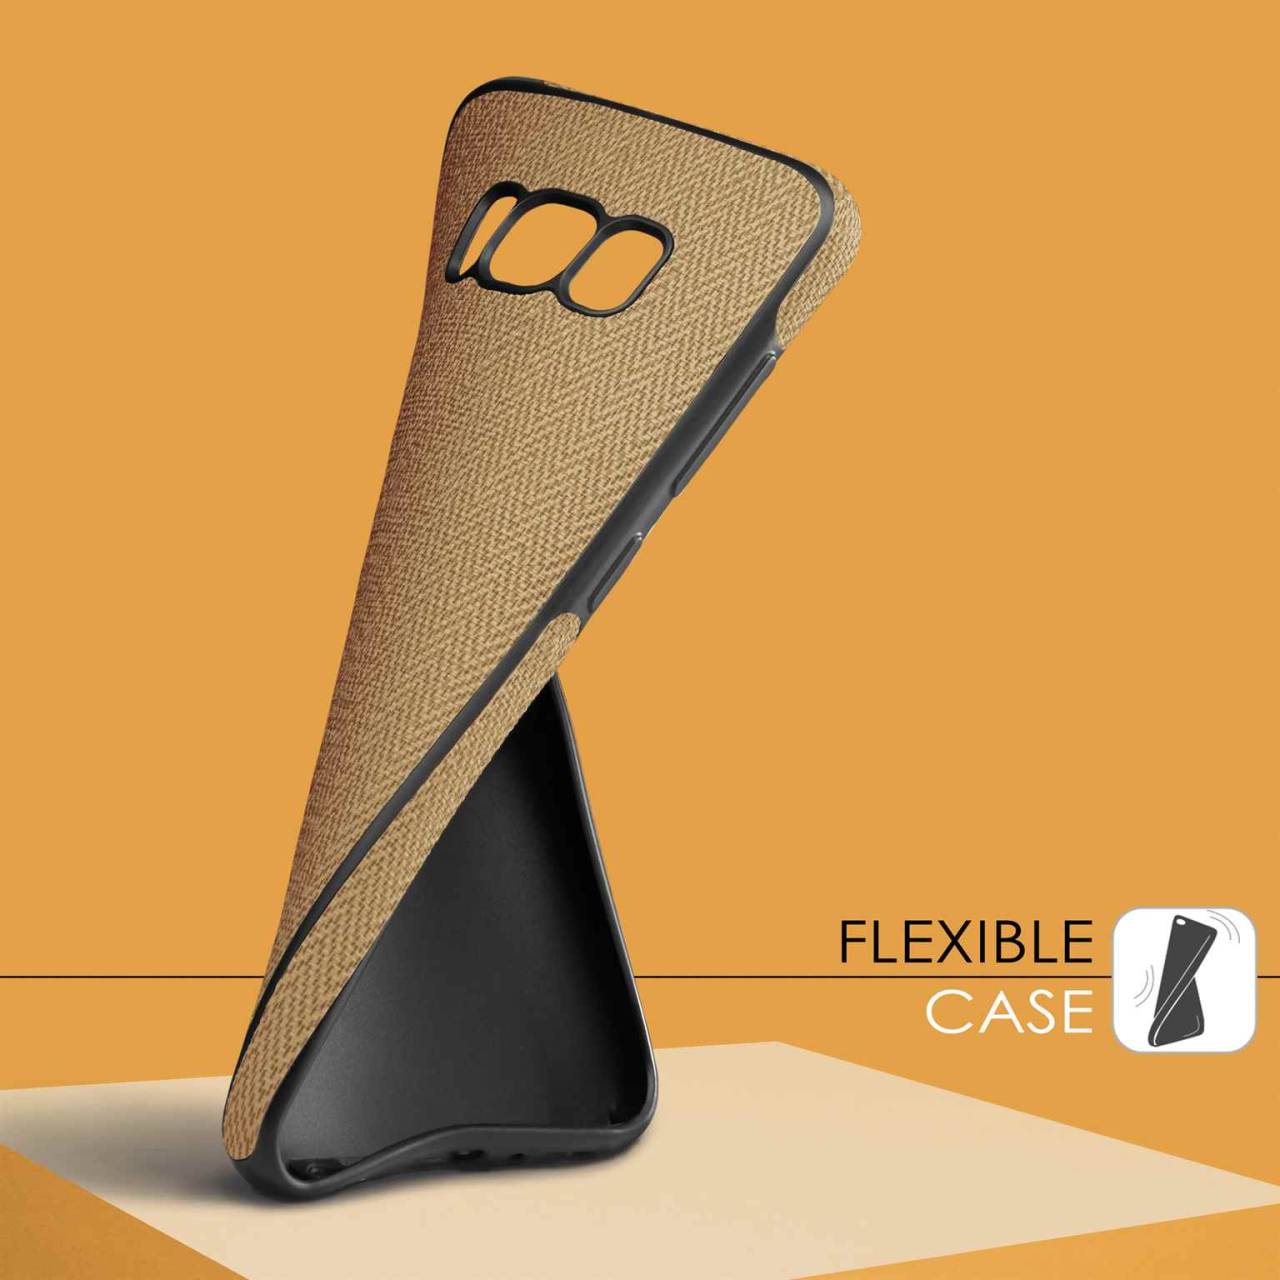 moex Chevron Case für Huawei P9 Lite – Flexible Hülle mit erhöhtem Rand für optimalen Schutz